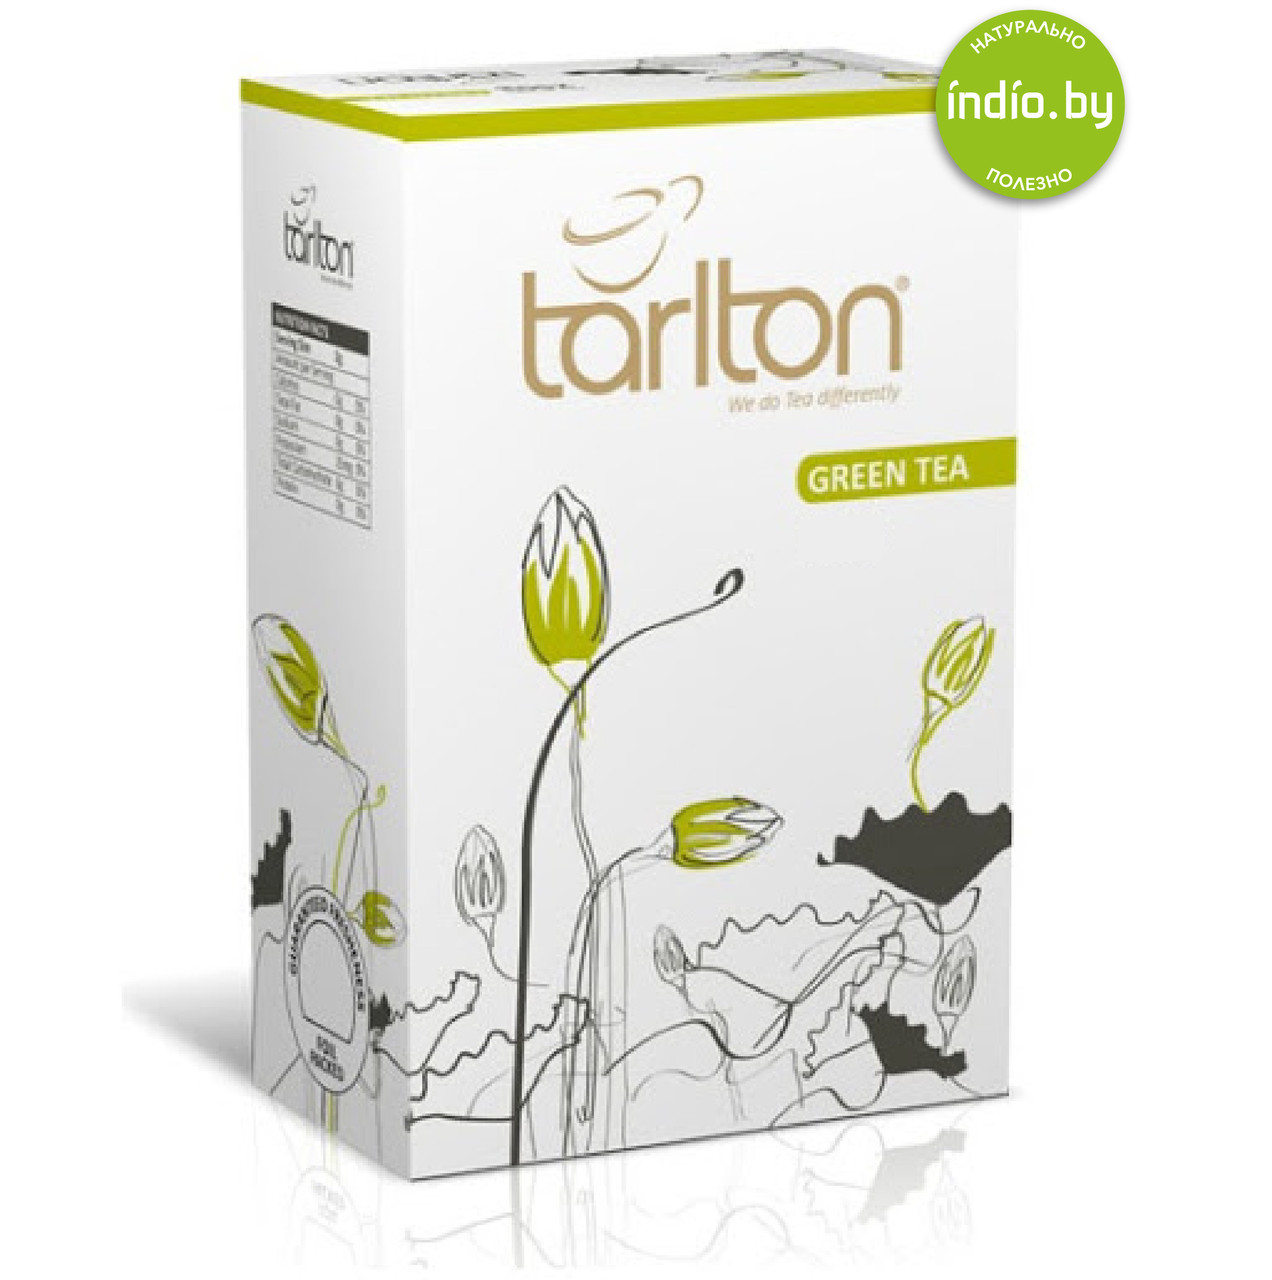 Чай среднелистовой зеленый GP1 Tarlton, пр-во Шри-Ланка 100 г